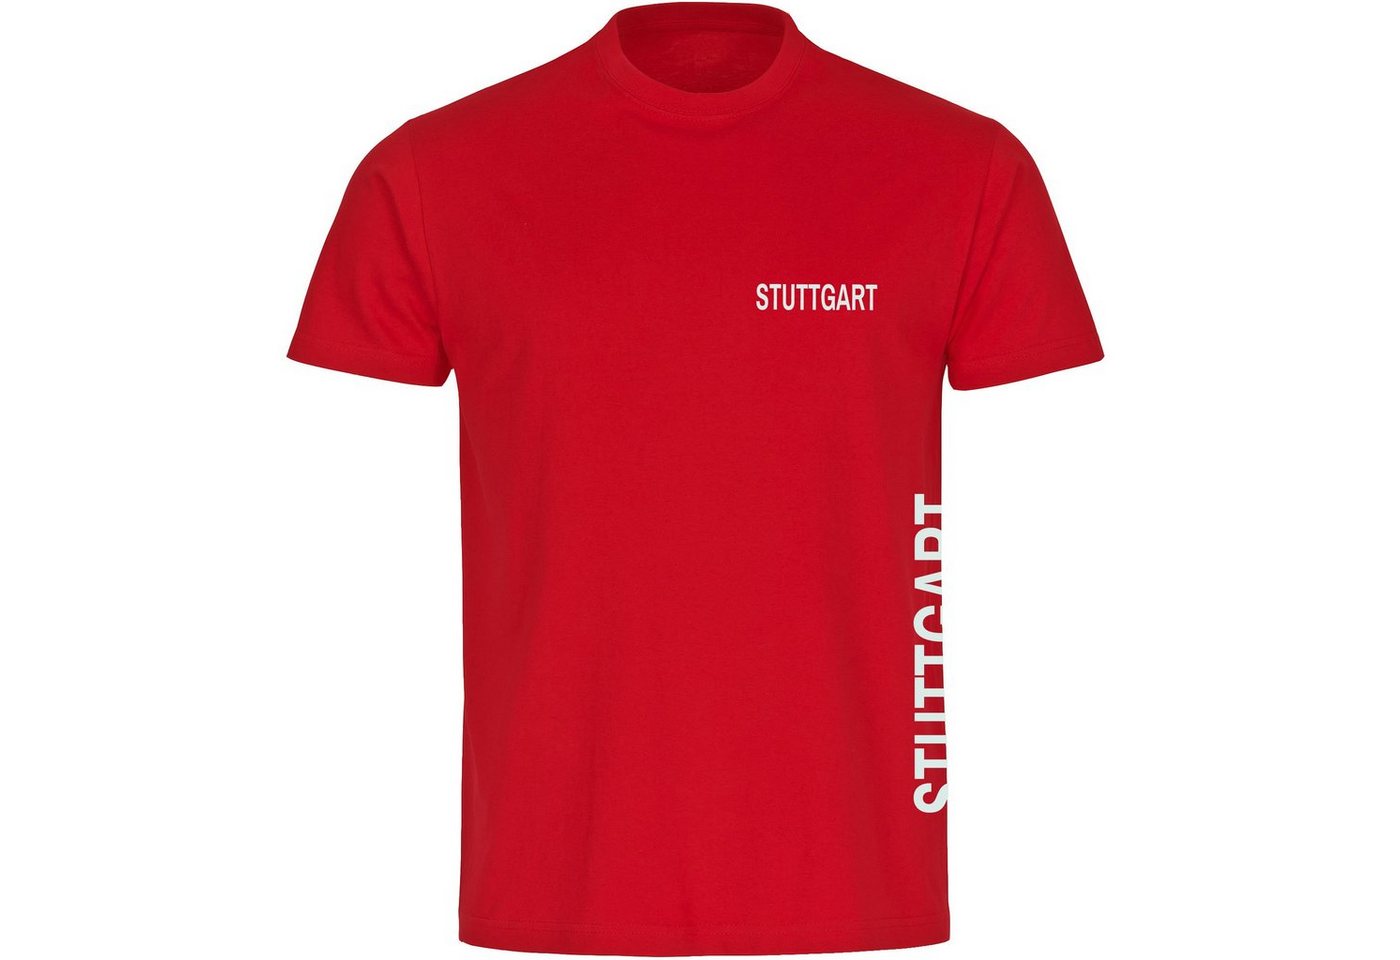 multifanshop T-Shirt Herren Stuttgart - Brust & Seite - Männer von multifanshop